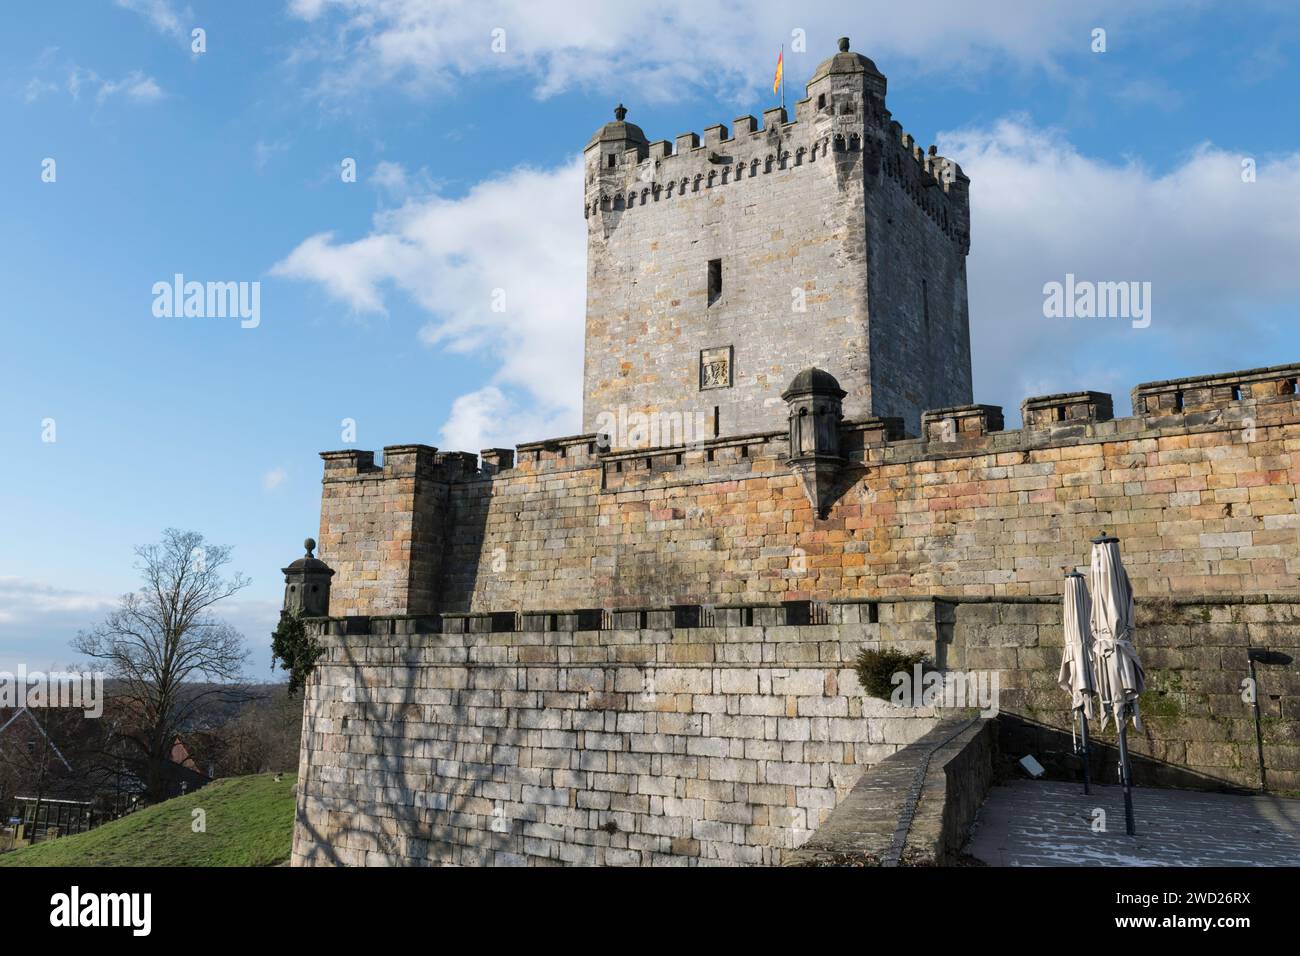 La vecchia torre dello storico castello di Bentheim, il più grande castello della Germania settentrionale Foto Stock